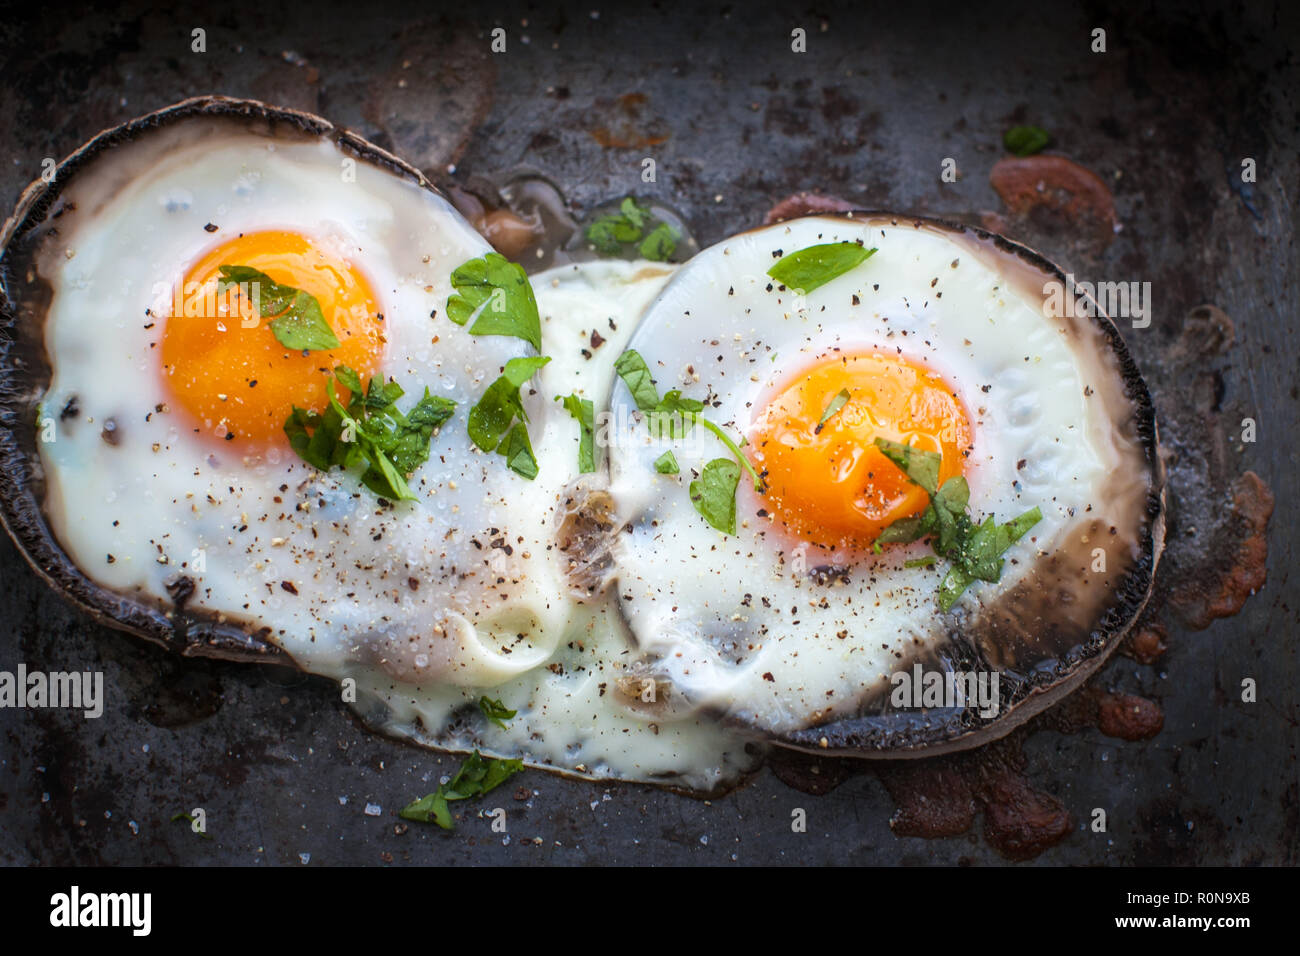 Brunch of baked eggs on portobello mushrooms Stock Photo